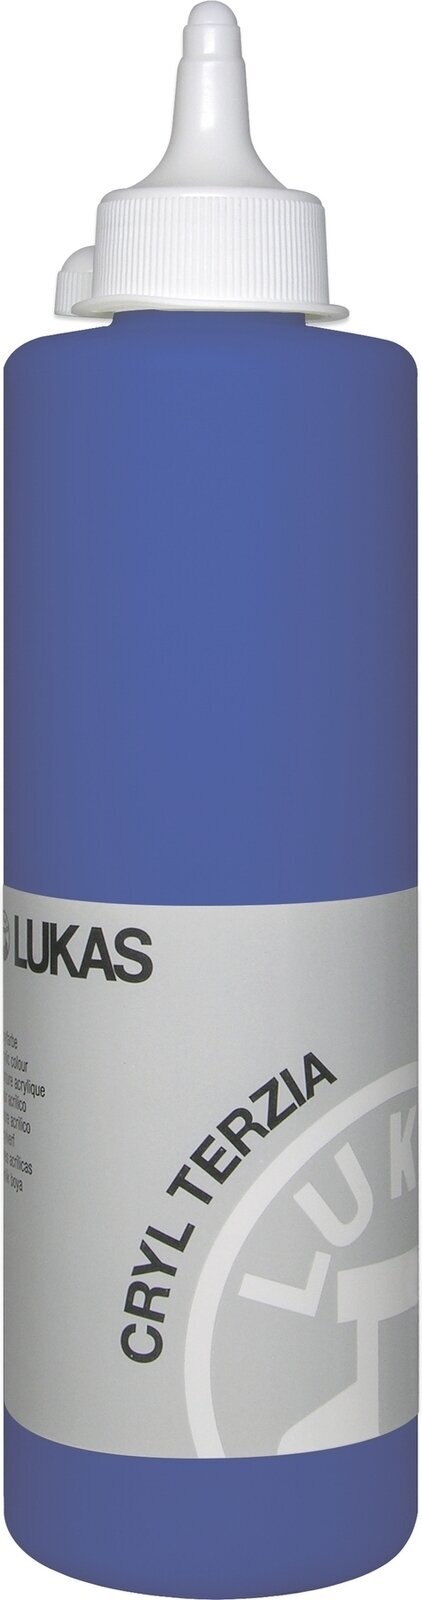 Akrylová barva Lukas Cryl Terzia Akrylová barva 500 ml Ultramarine